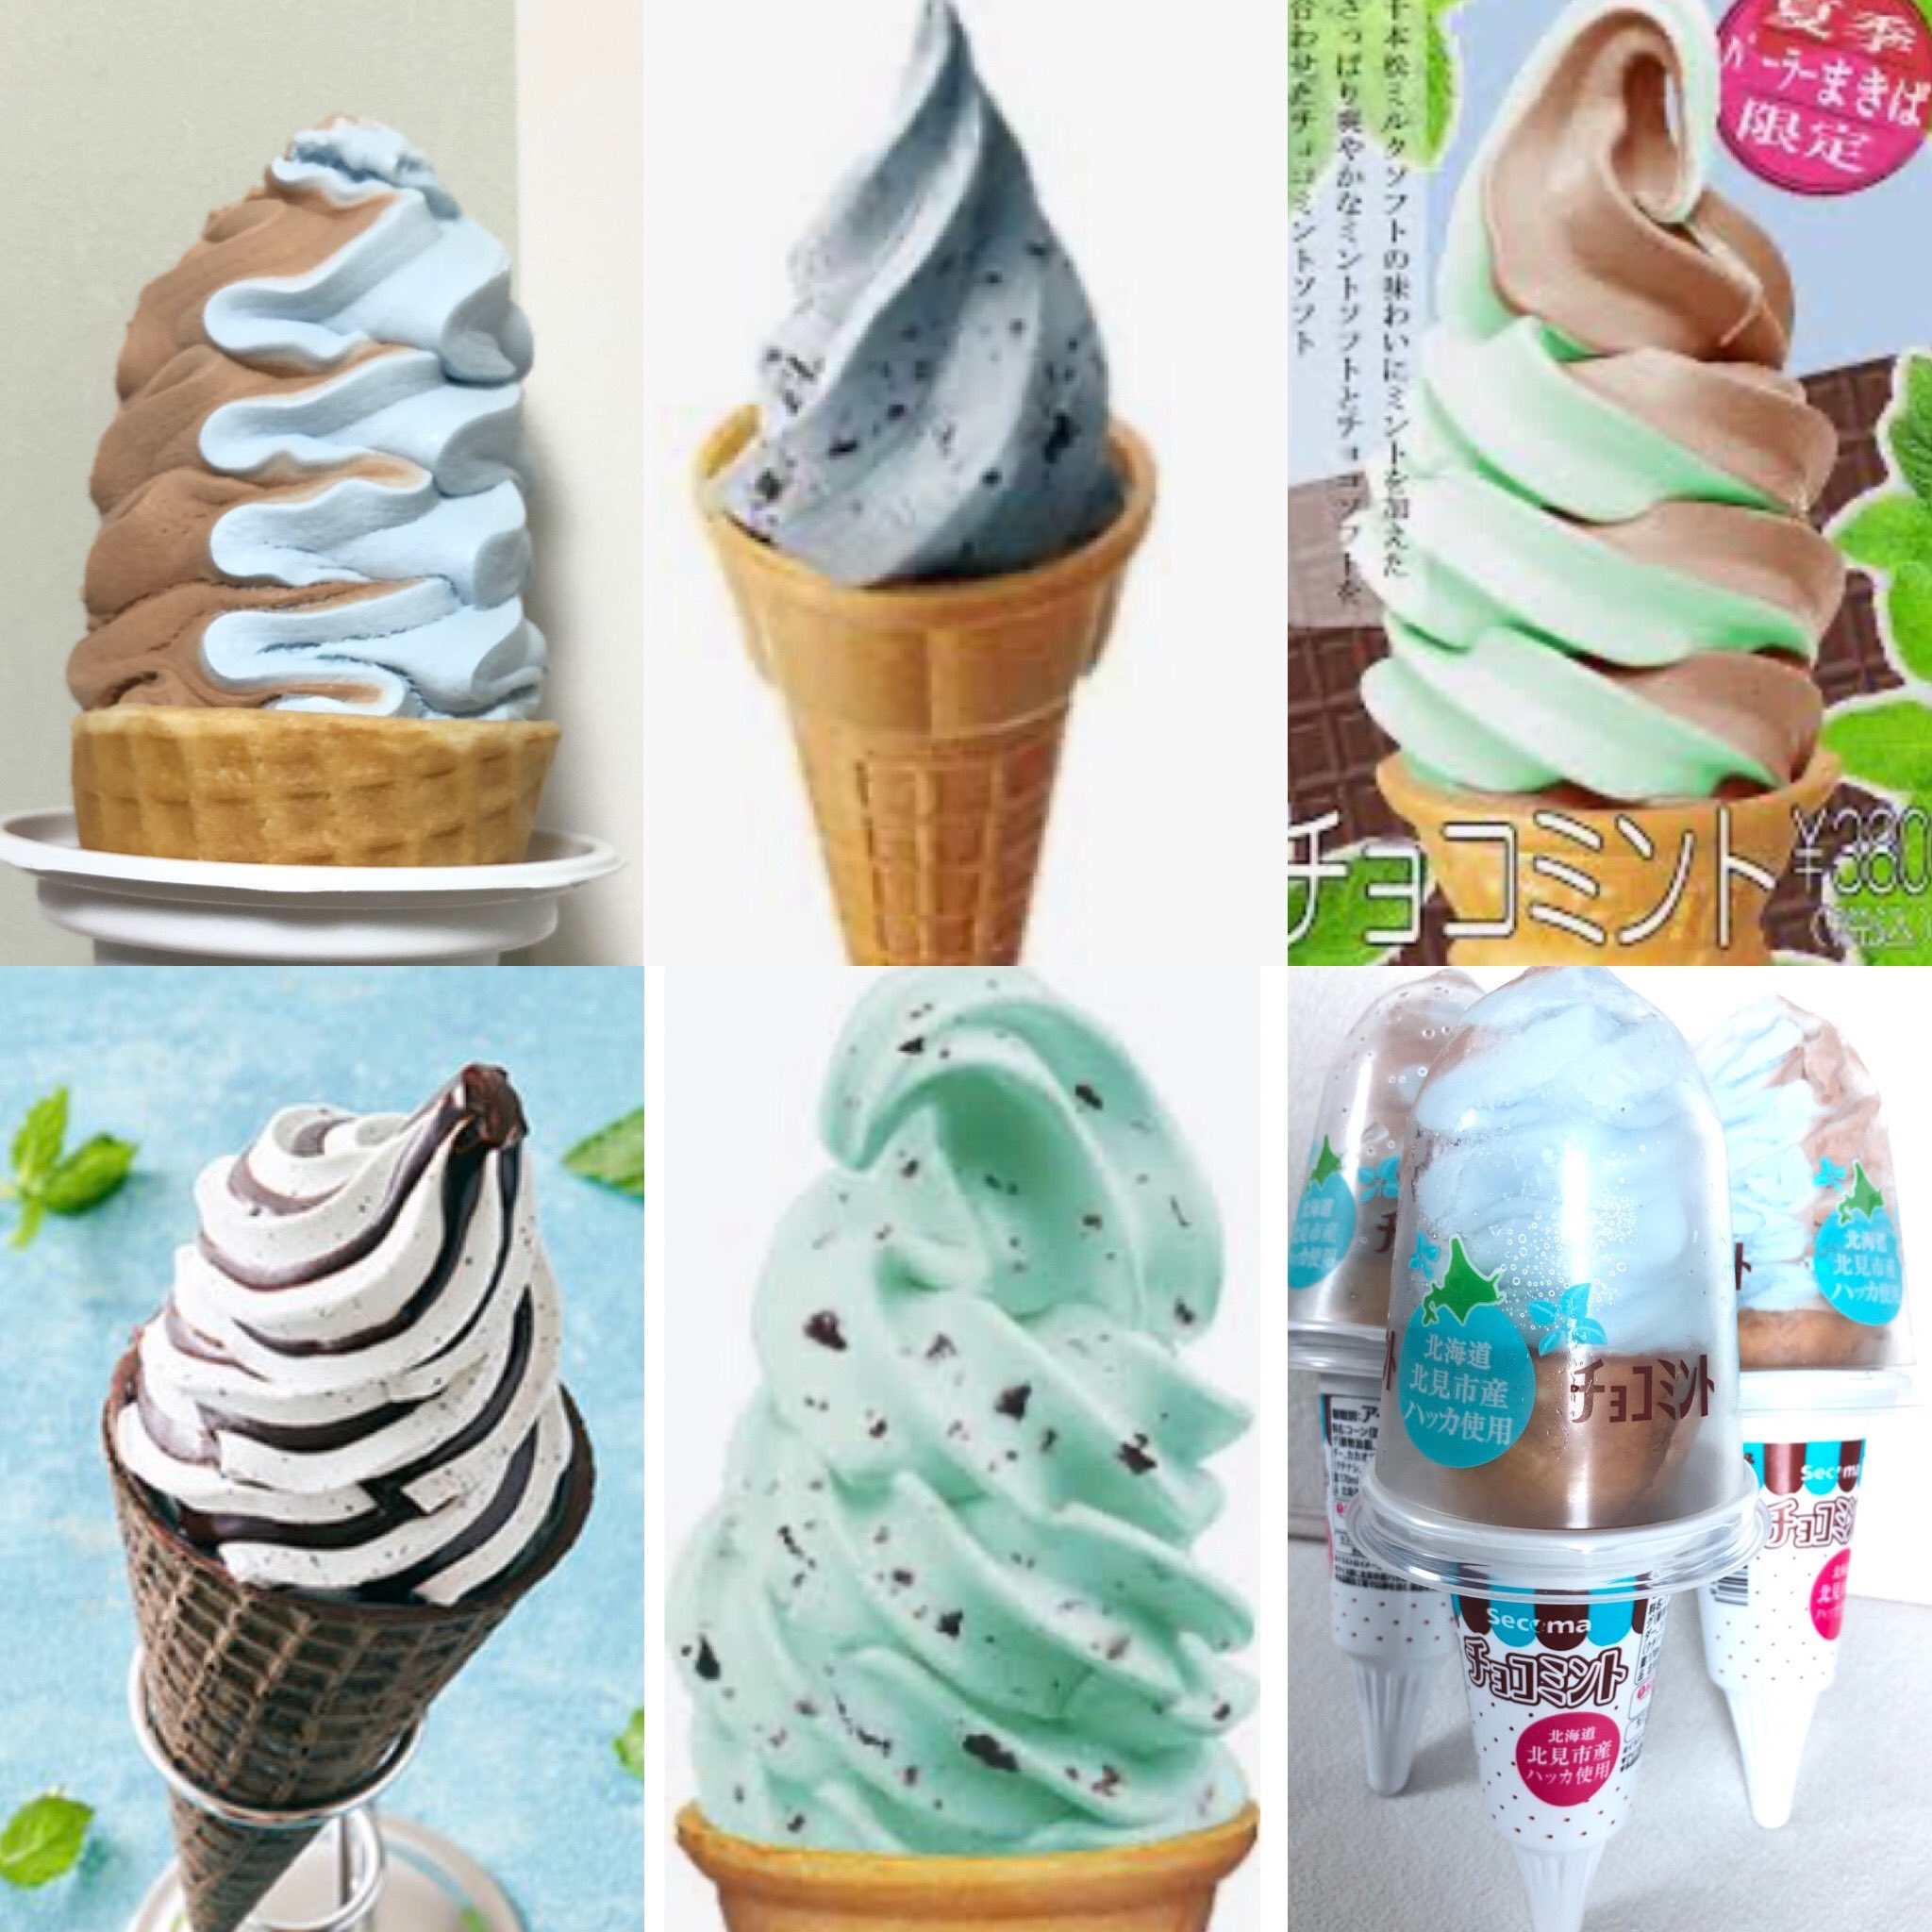 チョコミント屋さん 今日はソフトクリームの日です ぜひ チョコミントの ソフトクリームを ソフトクリームの日 チョコミント チョコミン党 T Co Zumlazlyhp Twitter